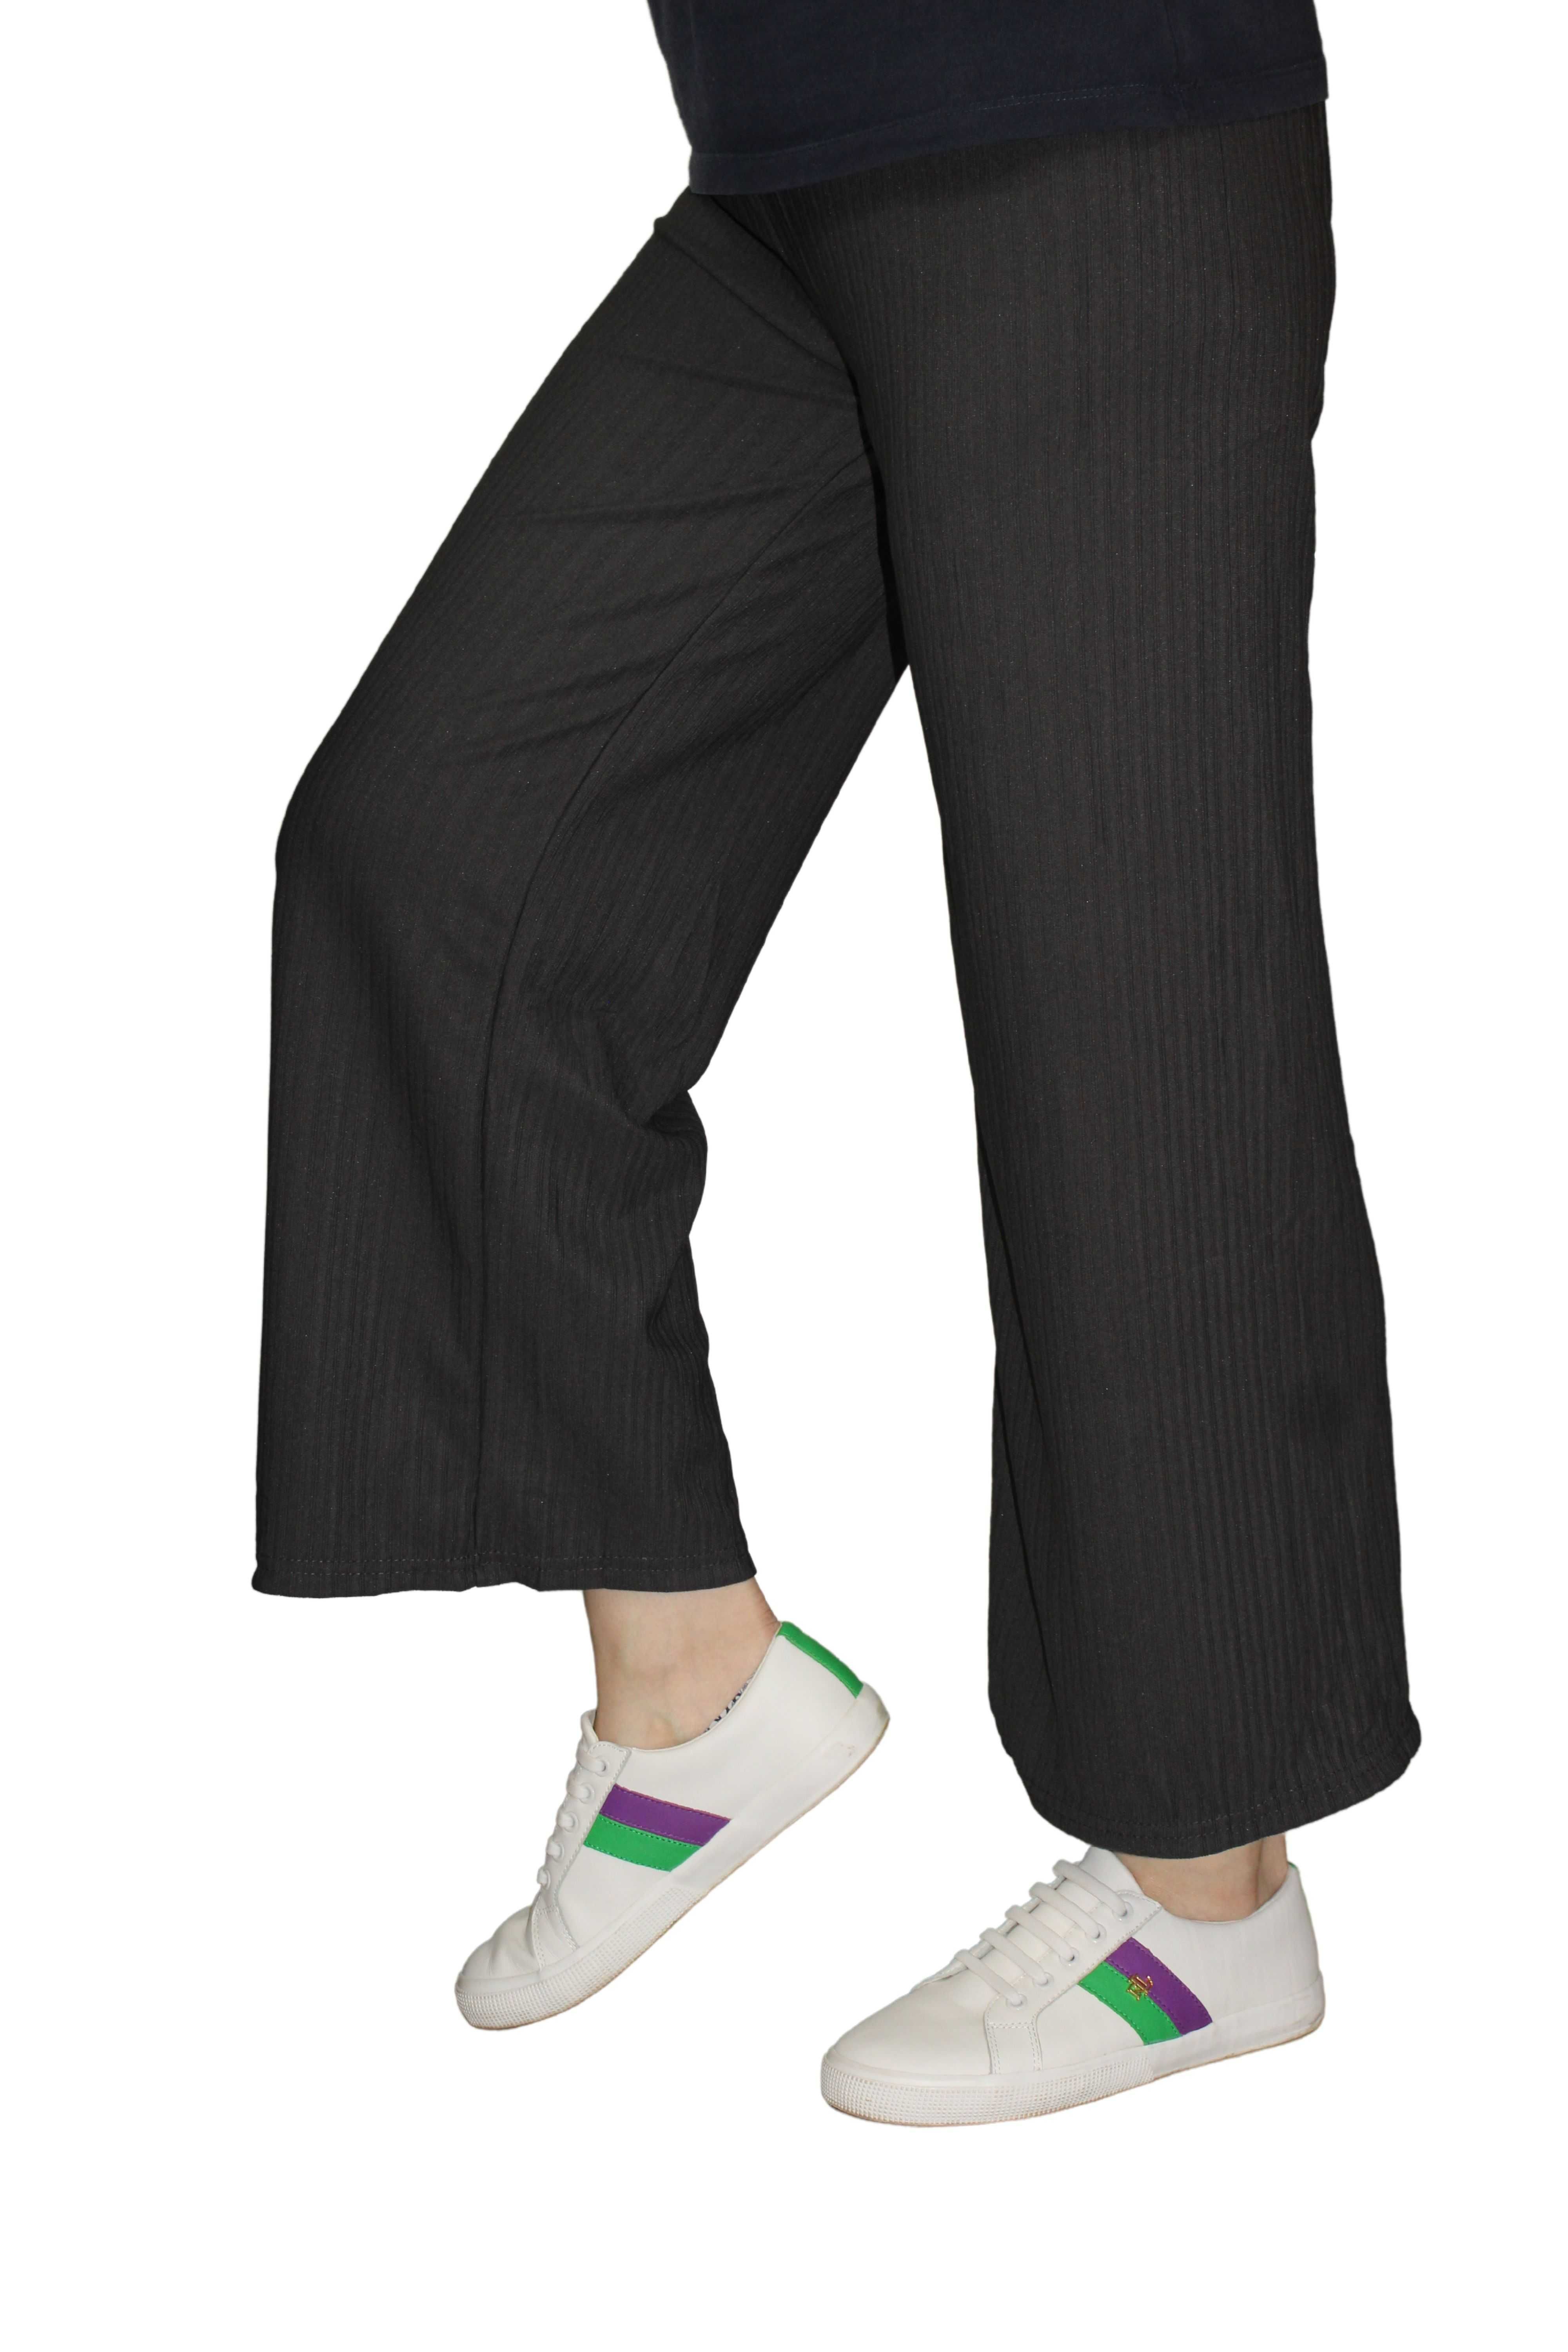 szerokie spodnie damskie cienkie szerokie przewiewne M/L lub XL/XXL